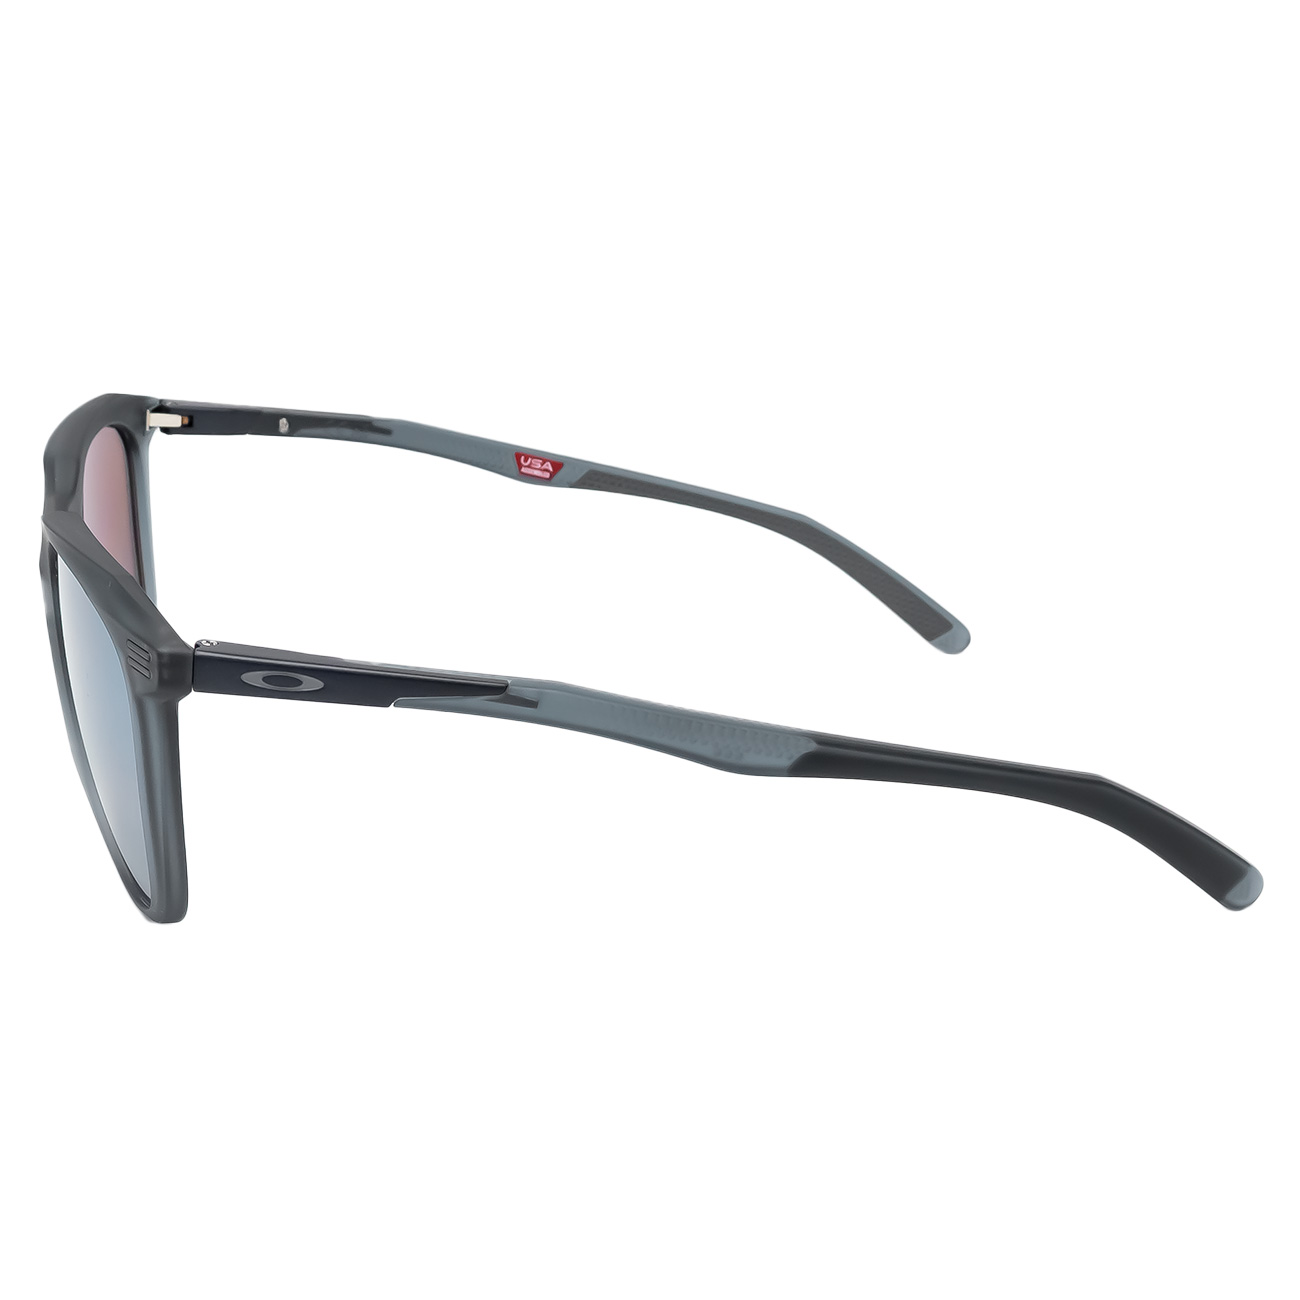 Óculos de Sol Oakley Thurso OO9286 05 Preto Crystal Fosco